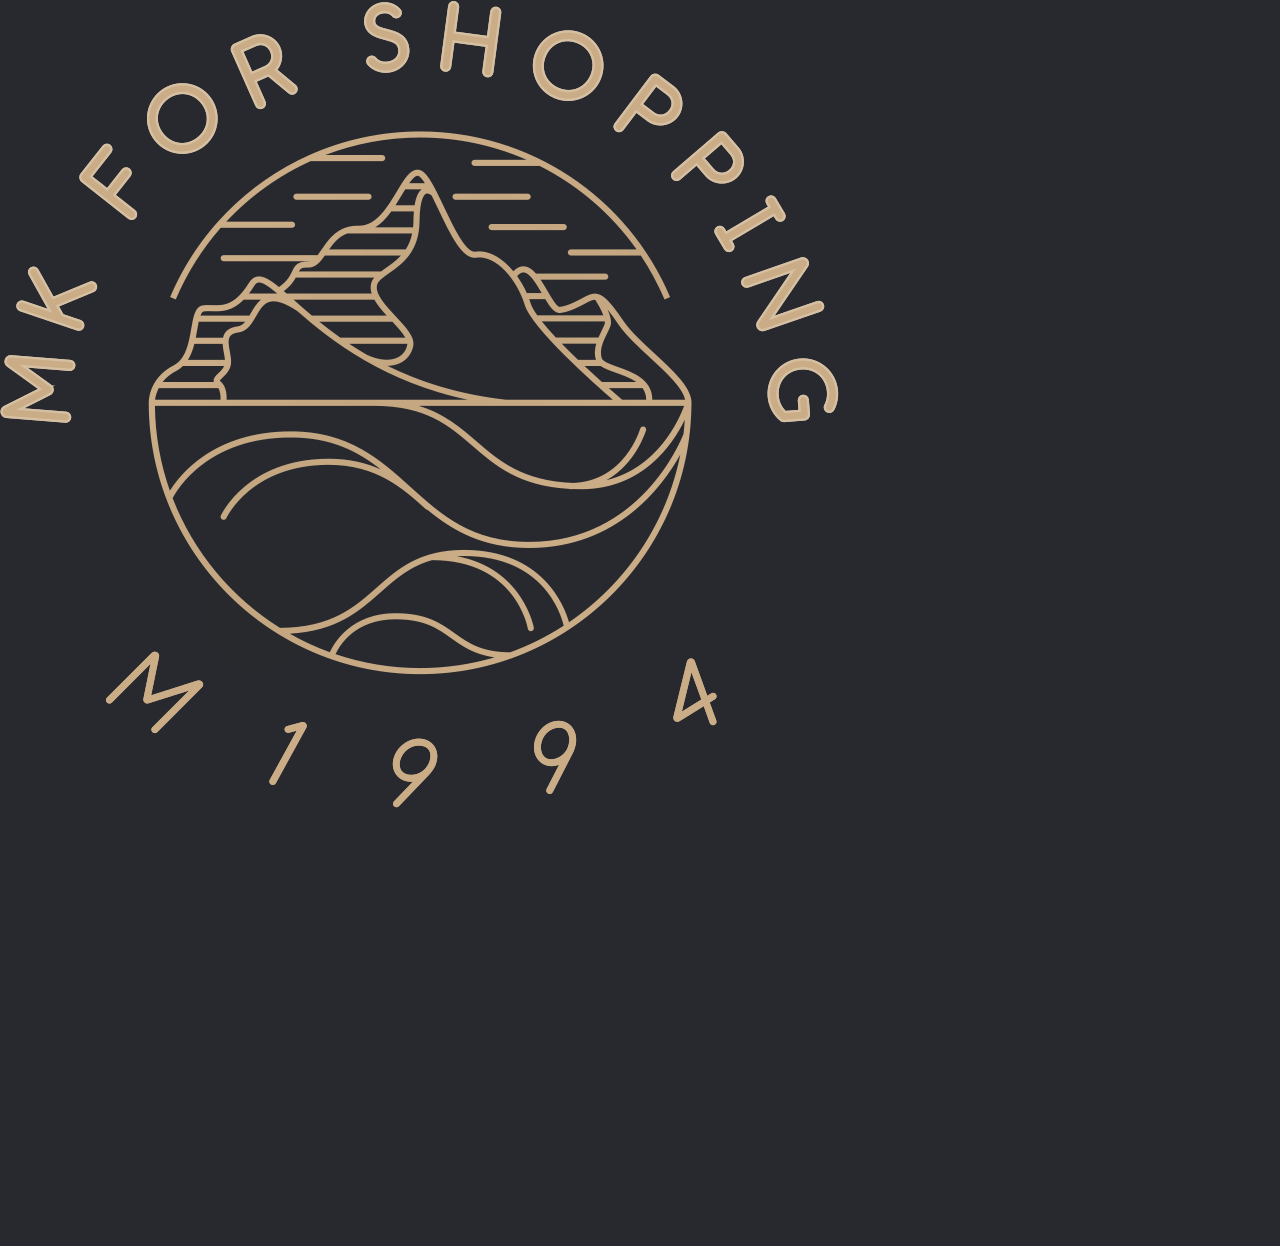 MK FOR SHOPPING's logo